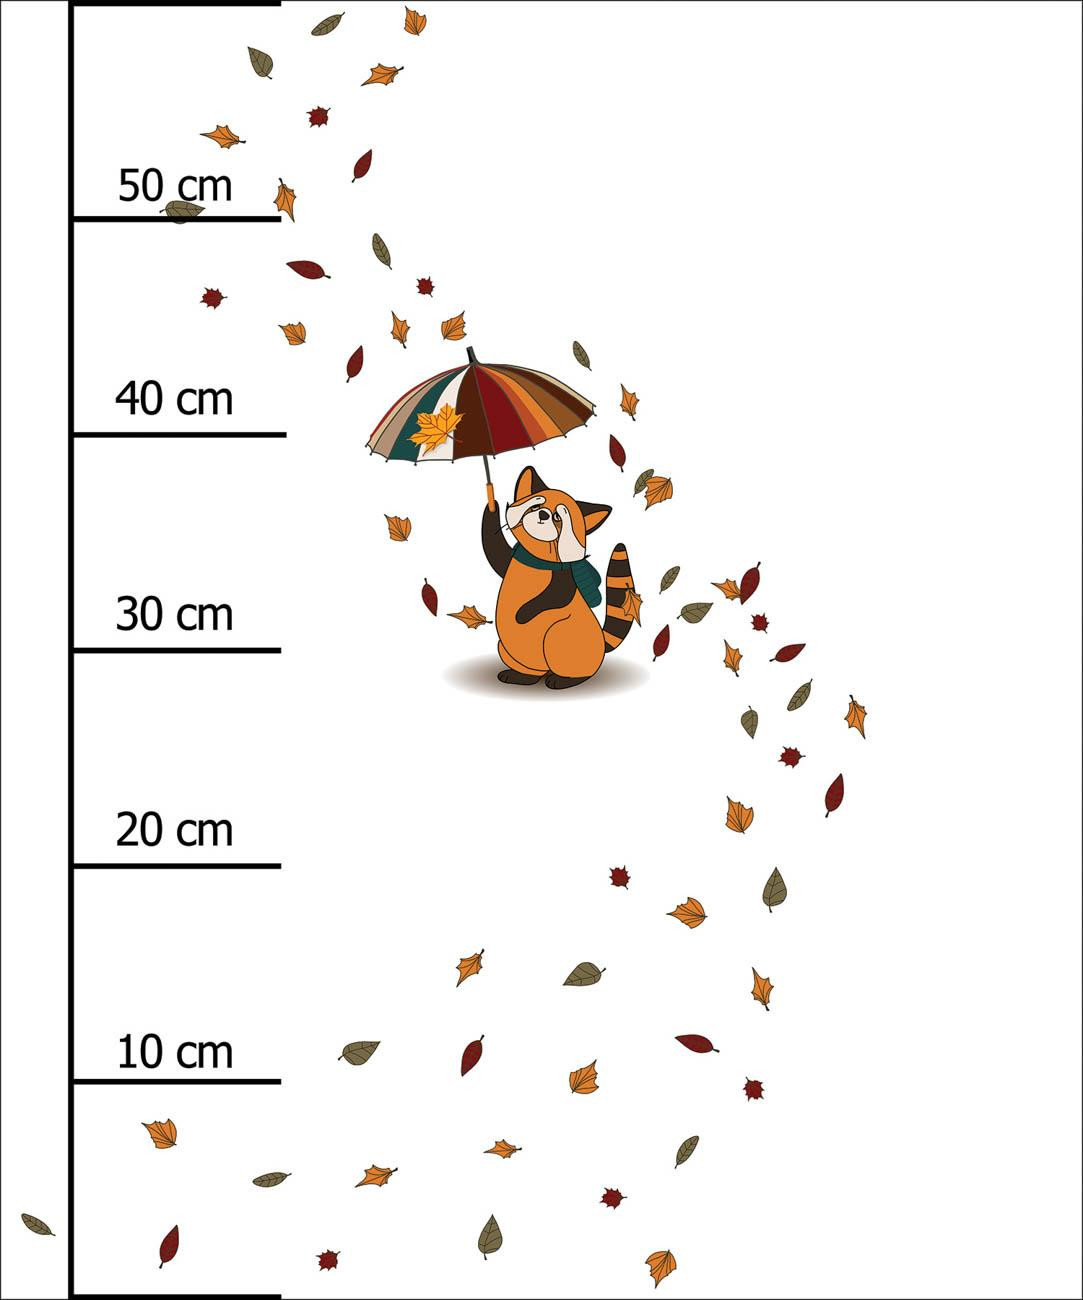 KLEINER PANDA MIT REGENSCHIRM (HERBST DES KLEINEN PANDA) - Paneel (60cm x 50cm) leichte Maschenware angeraut